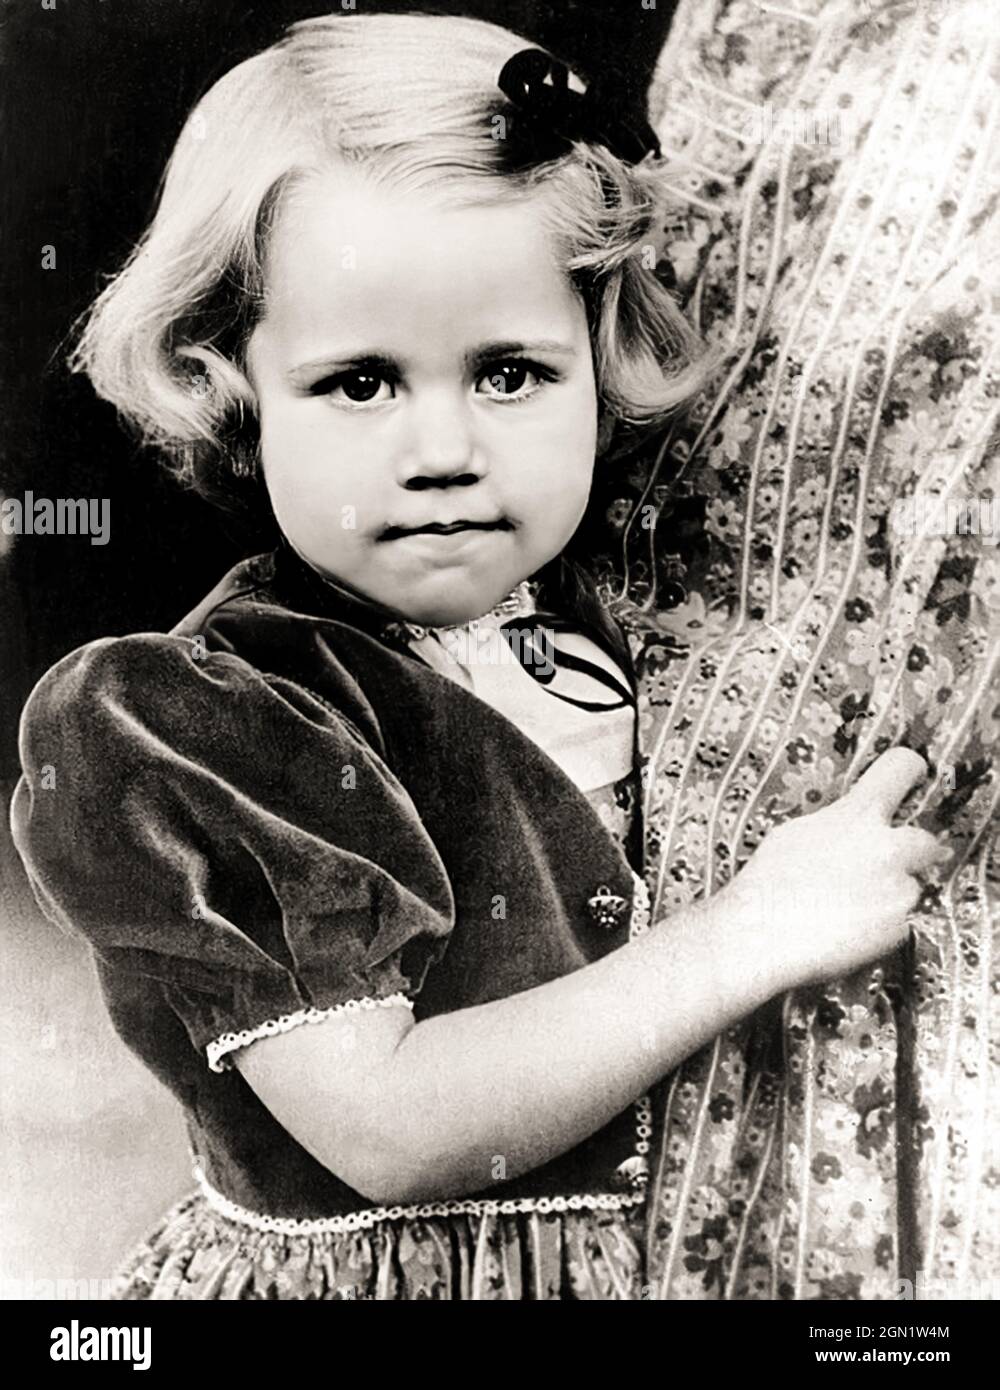 1941 c. , USA : The celebrated american actress JANE FONDA ( born 21 december 1938 ) when was a little girl , aged 3 . Daughter of actor Henry Fonda and Frances Seymour Brokaw . Unknown photographer .- HISTORY - FOTO STORICHE - ATTORE - ATTRICE - MOVIE - CINEMA  - personalità da da giovane giovani - da bambina bambino bambini - personality personalities when was young - CHILDHOOD - INFANZIA - CHILD - CHILDREN  --- ARCHIVIO GBB Stock Photo